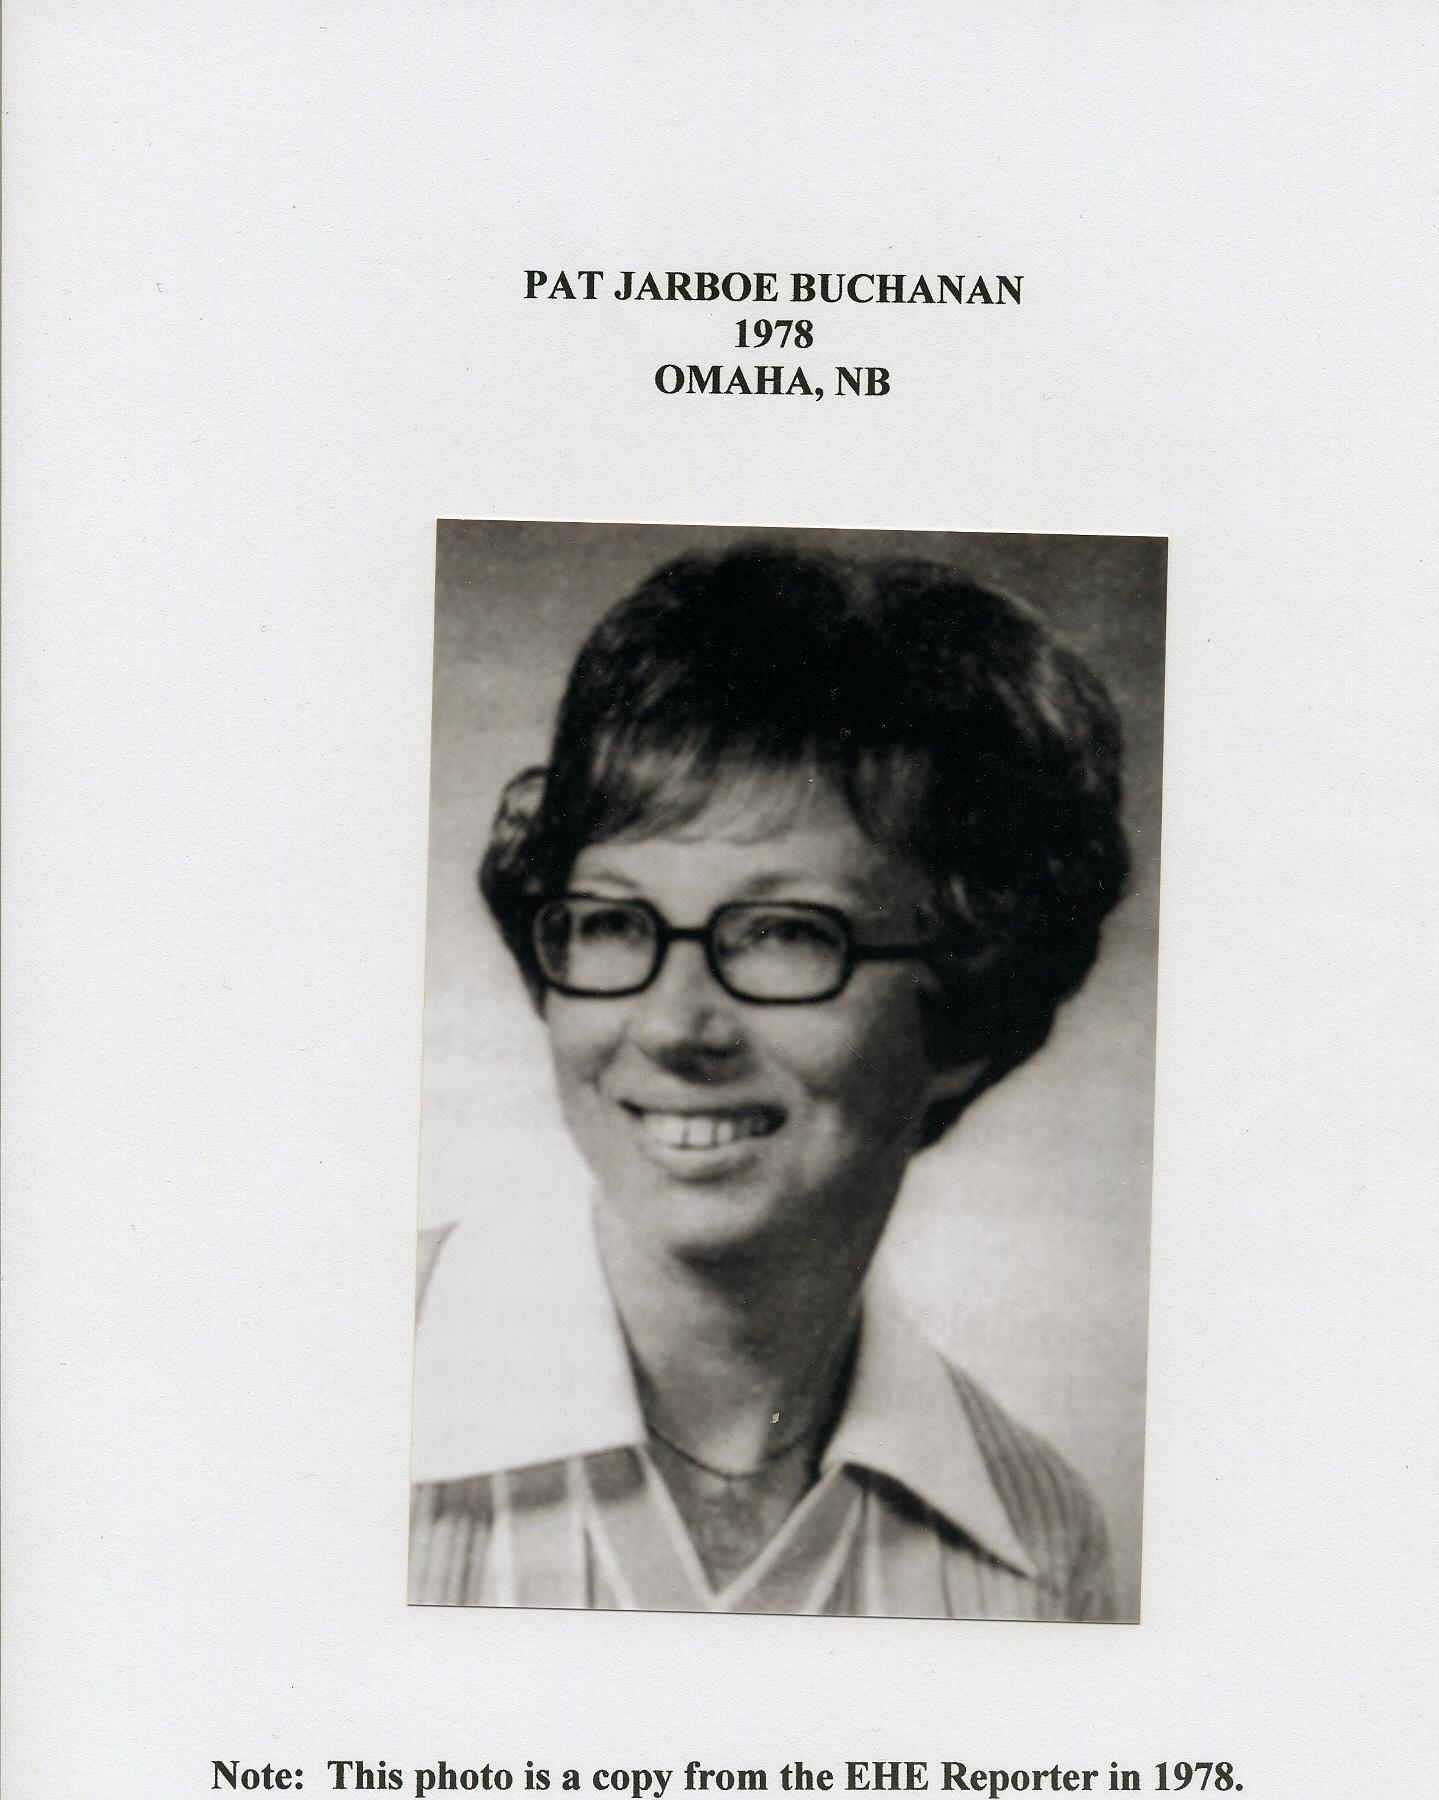 Pat Jarboe Buchanan